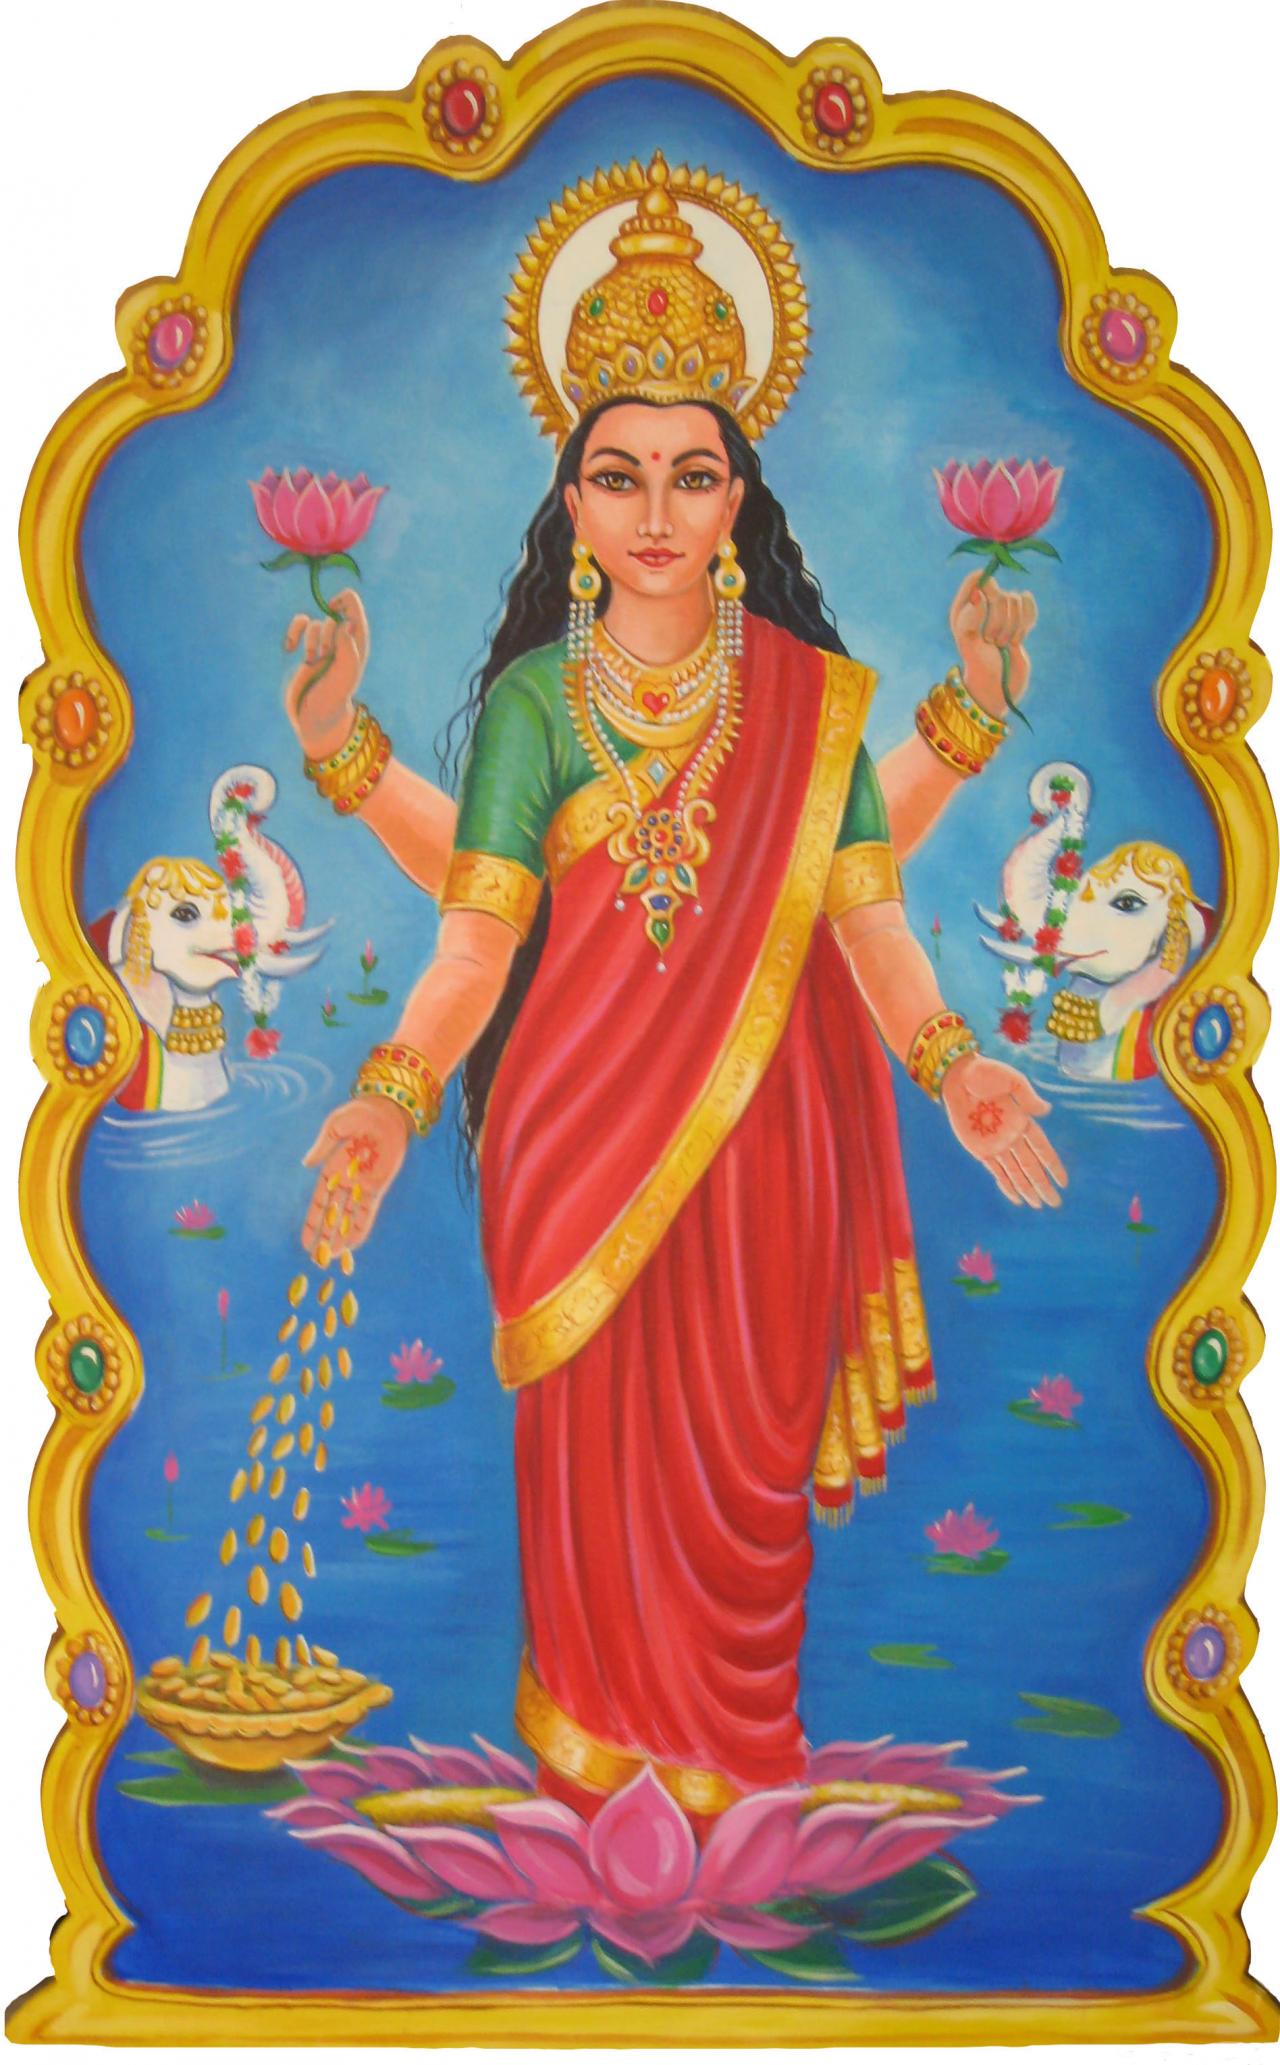 Malarmagal Nachiyar Sannadhi-Navatirupati,Tirupulingudi